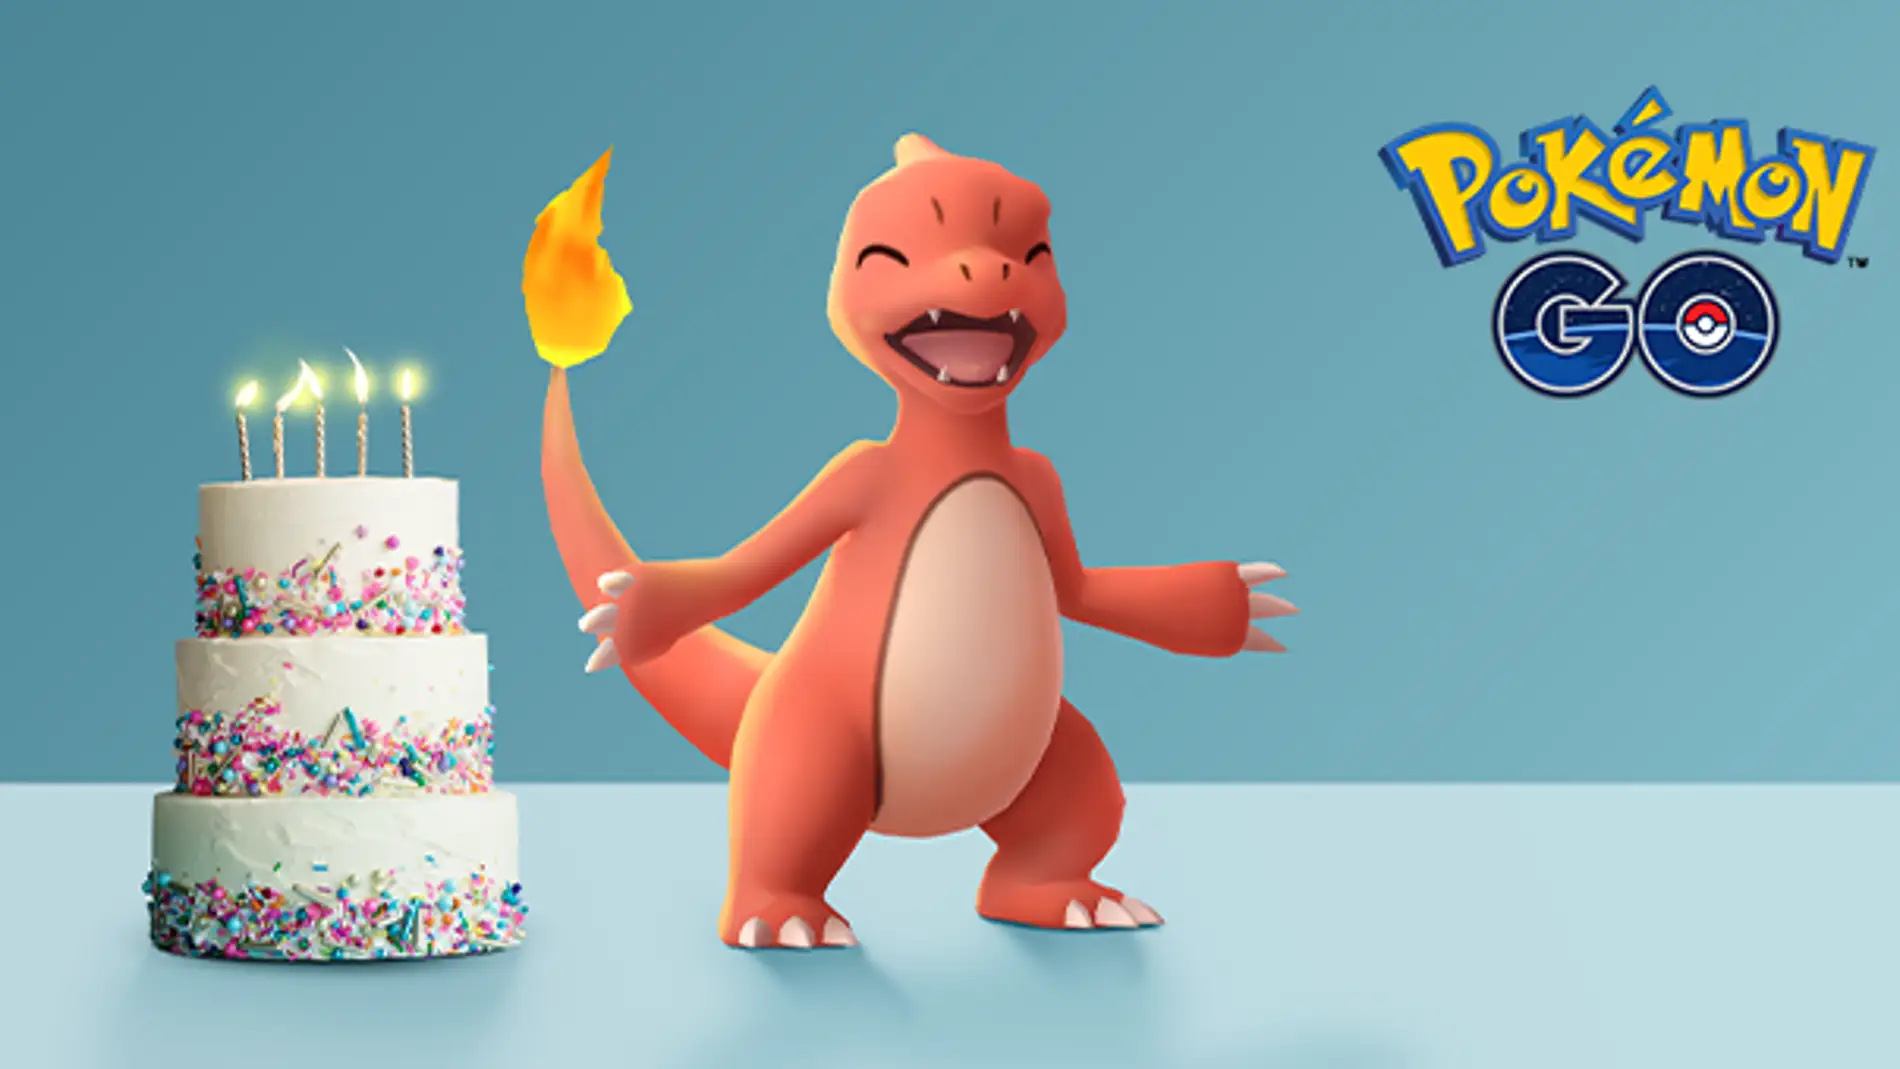 Pokémon GO cumple 5 años repletos de éxitos y lo celebra con un gran evento  - VÍDEO